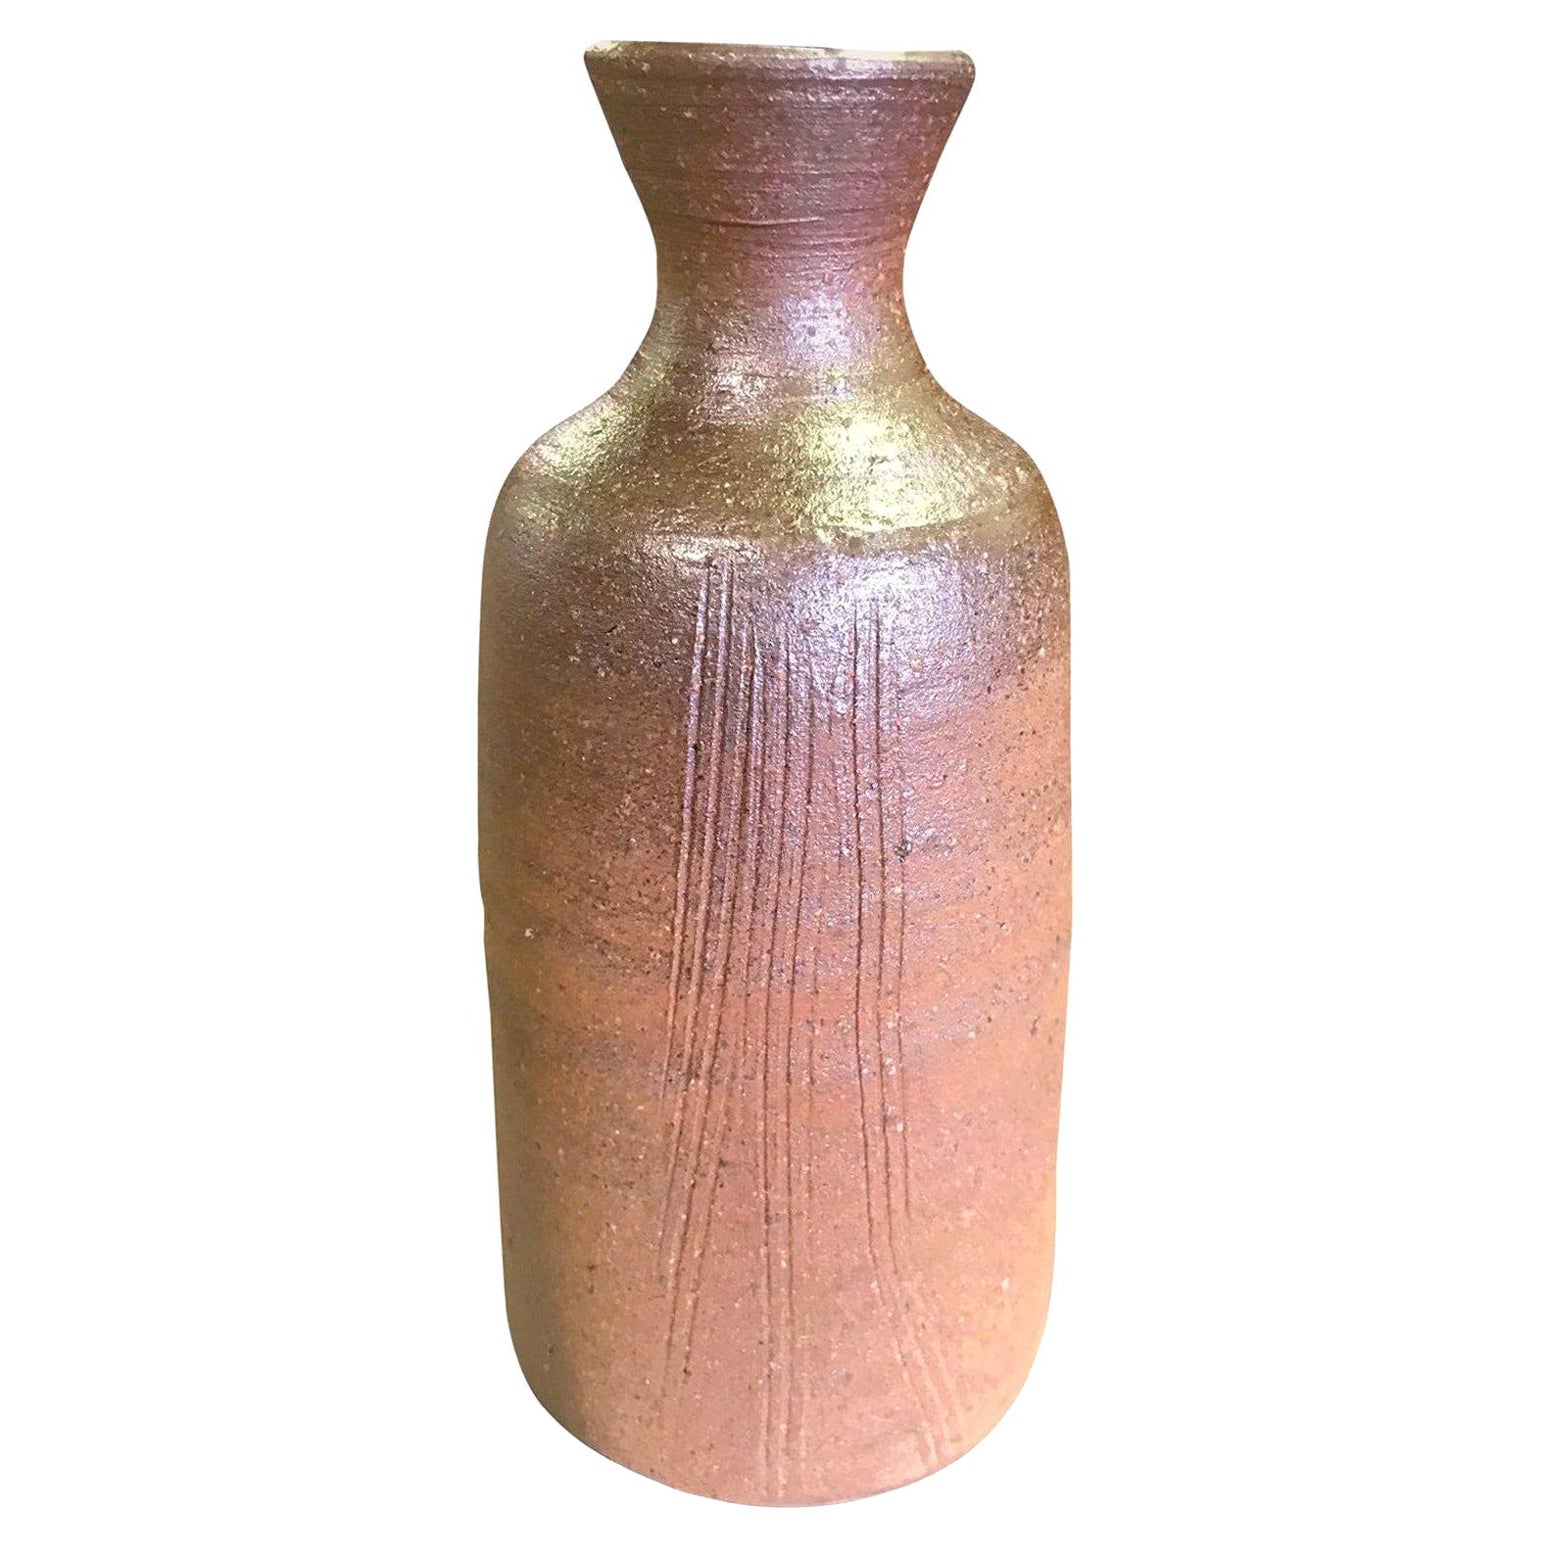 Yu Fujiwara Signed Japanese Bizen-Yaki Ware Pottery Bottle Vase with Signed Box